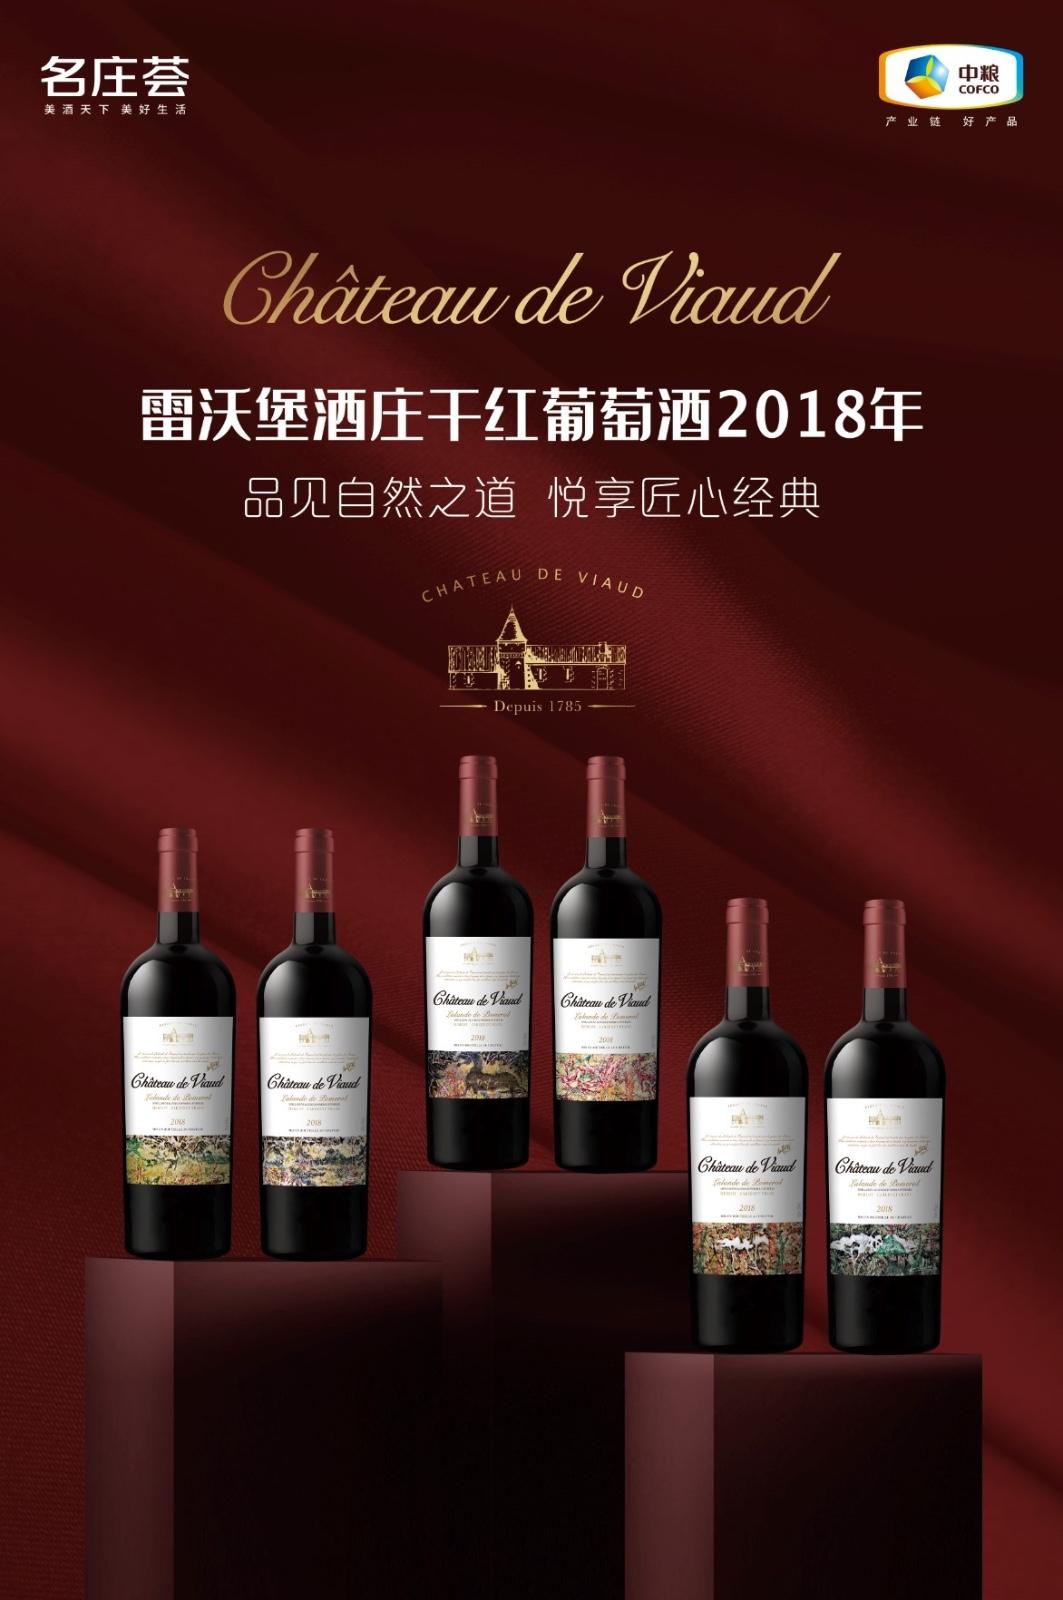 葡萄酒品牌雷沃堡成为第二届中国大众网球联赛官方供应商 